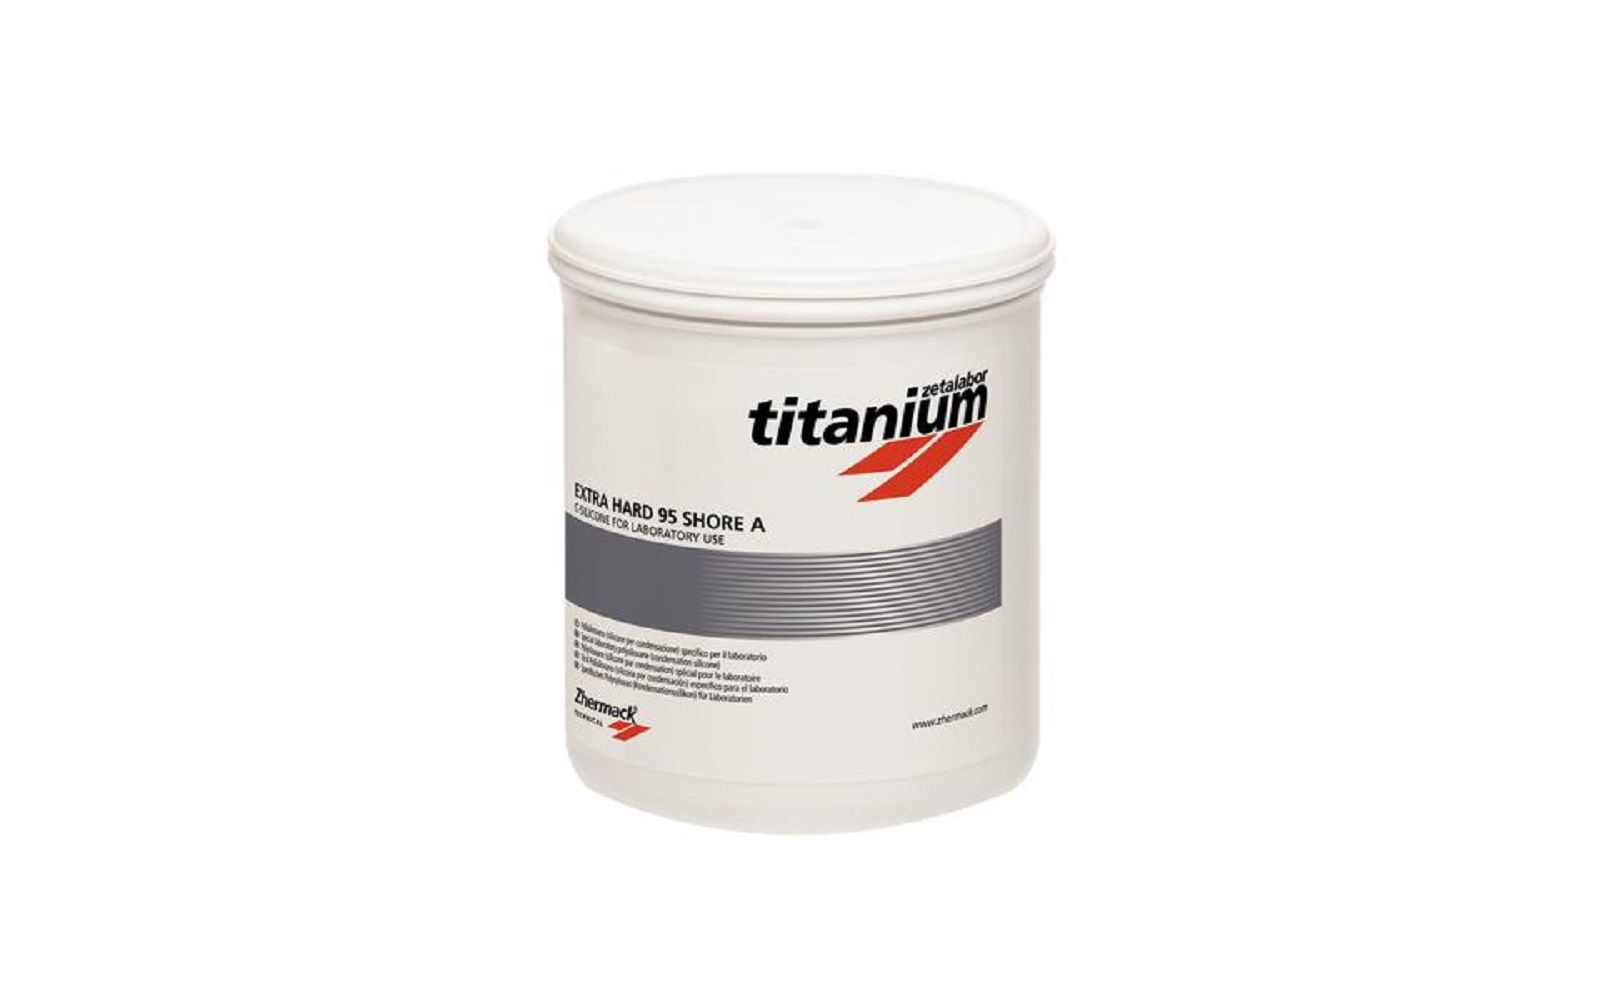 Titanium zetalabor – condensation silicone, 2. 6 kg tub